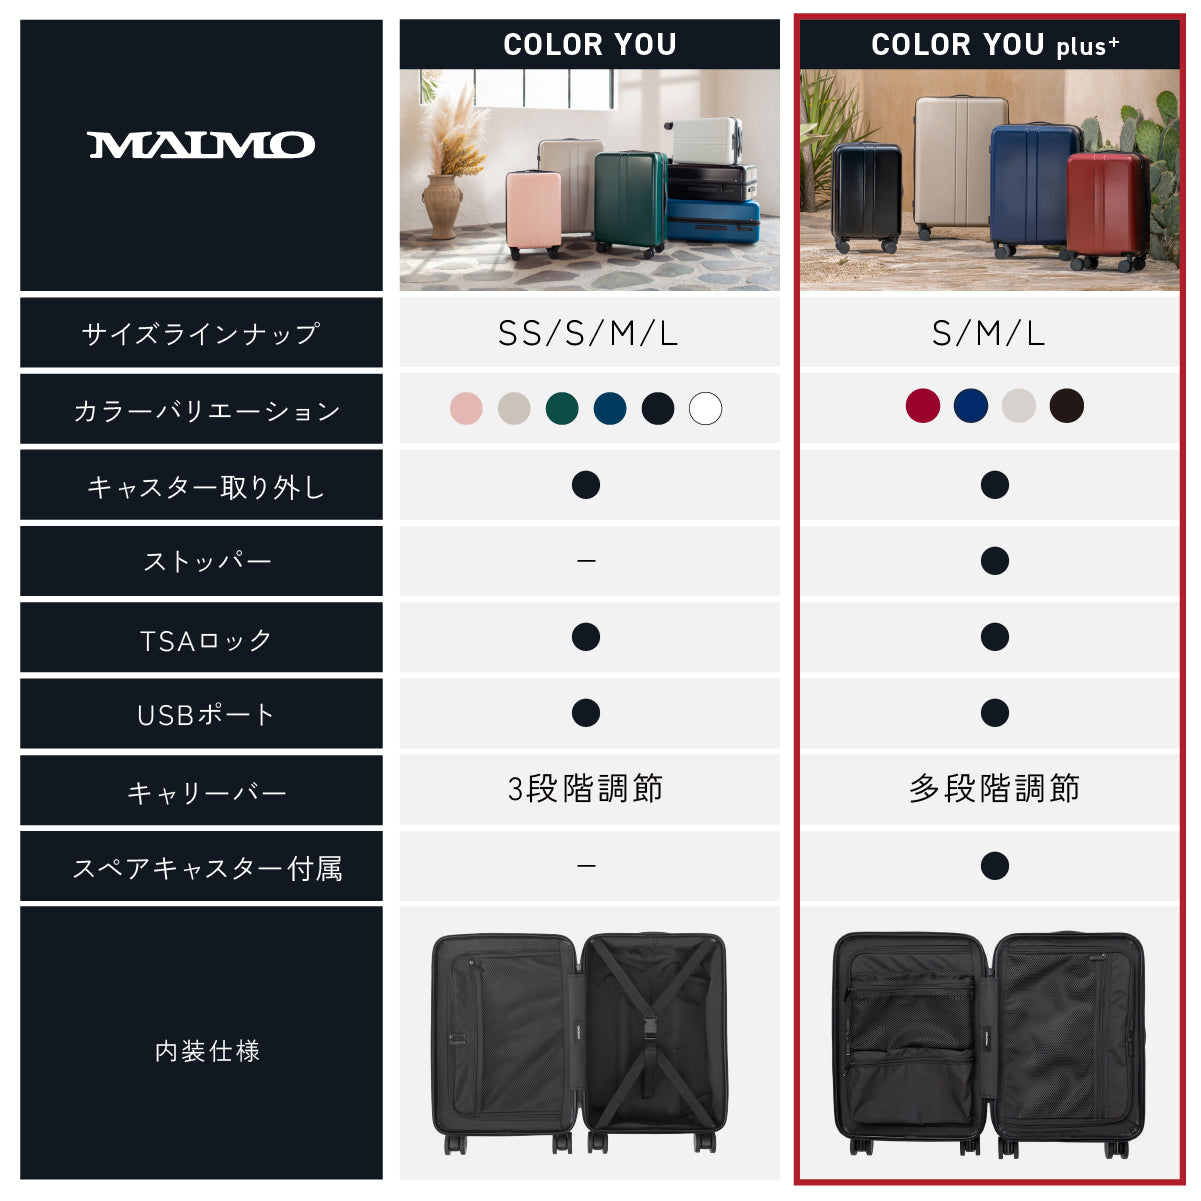 COLOR YOU plus ディープブラック Lサイズ – MAIMO公式オンラインショップ